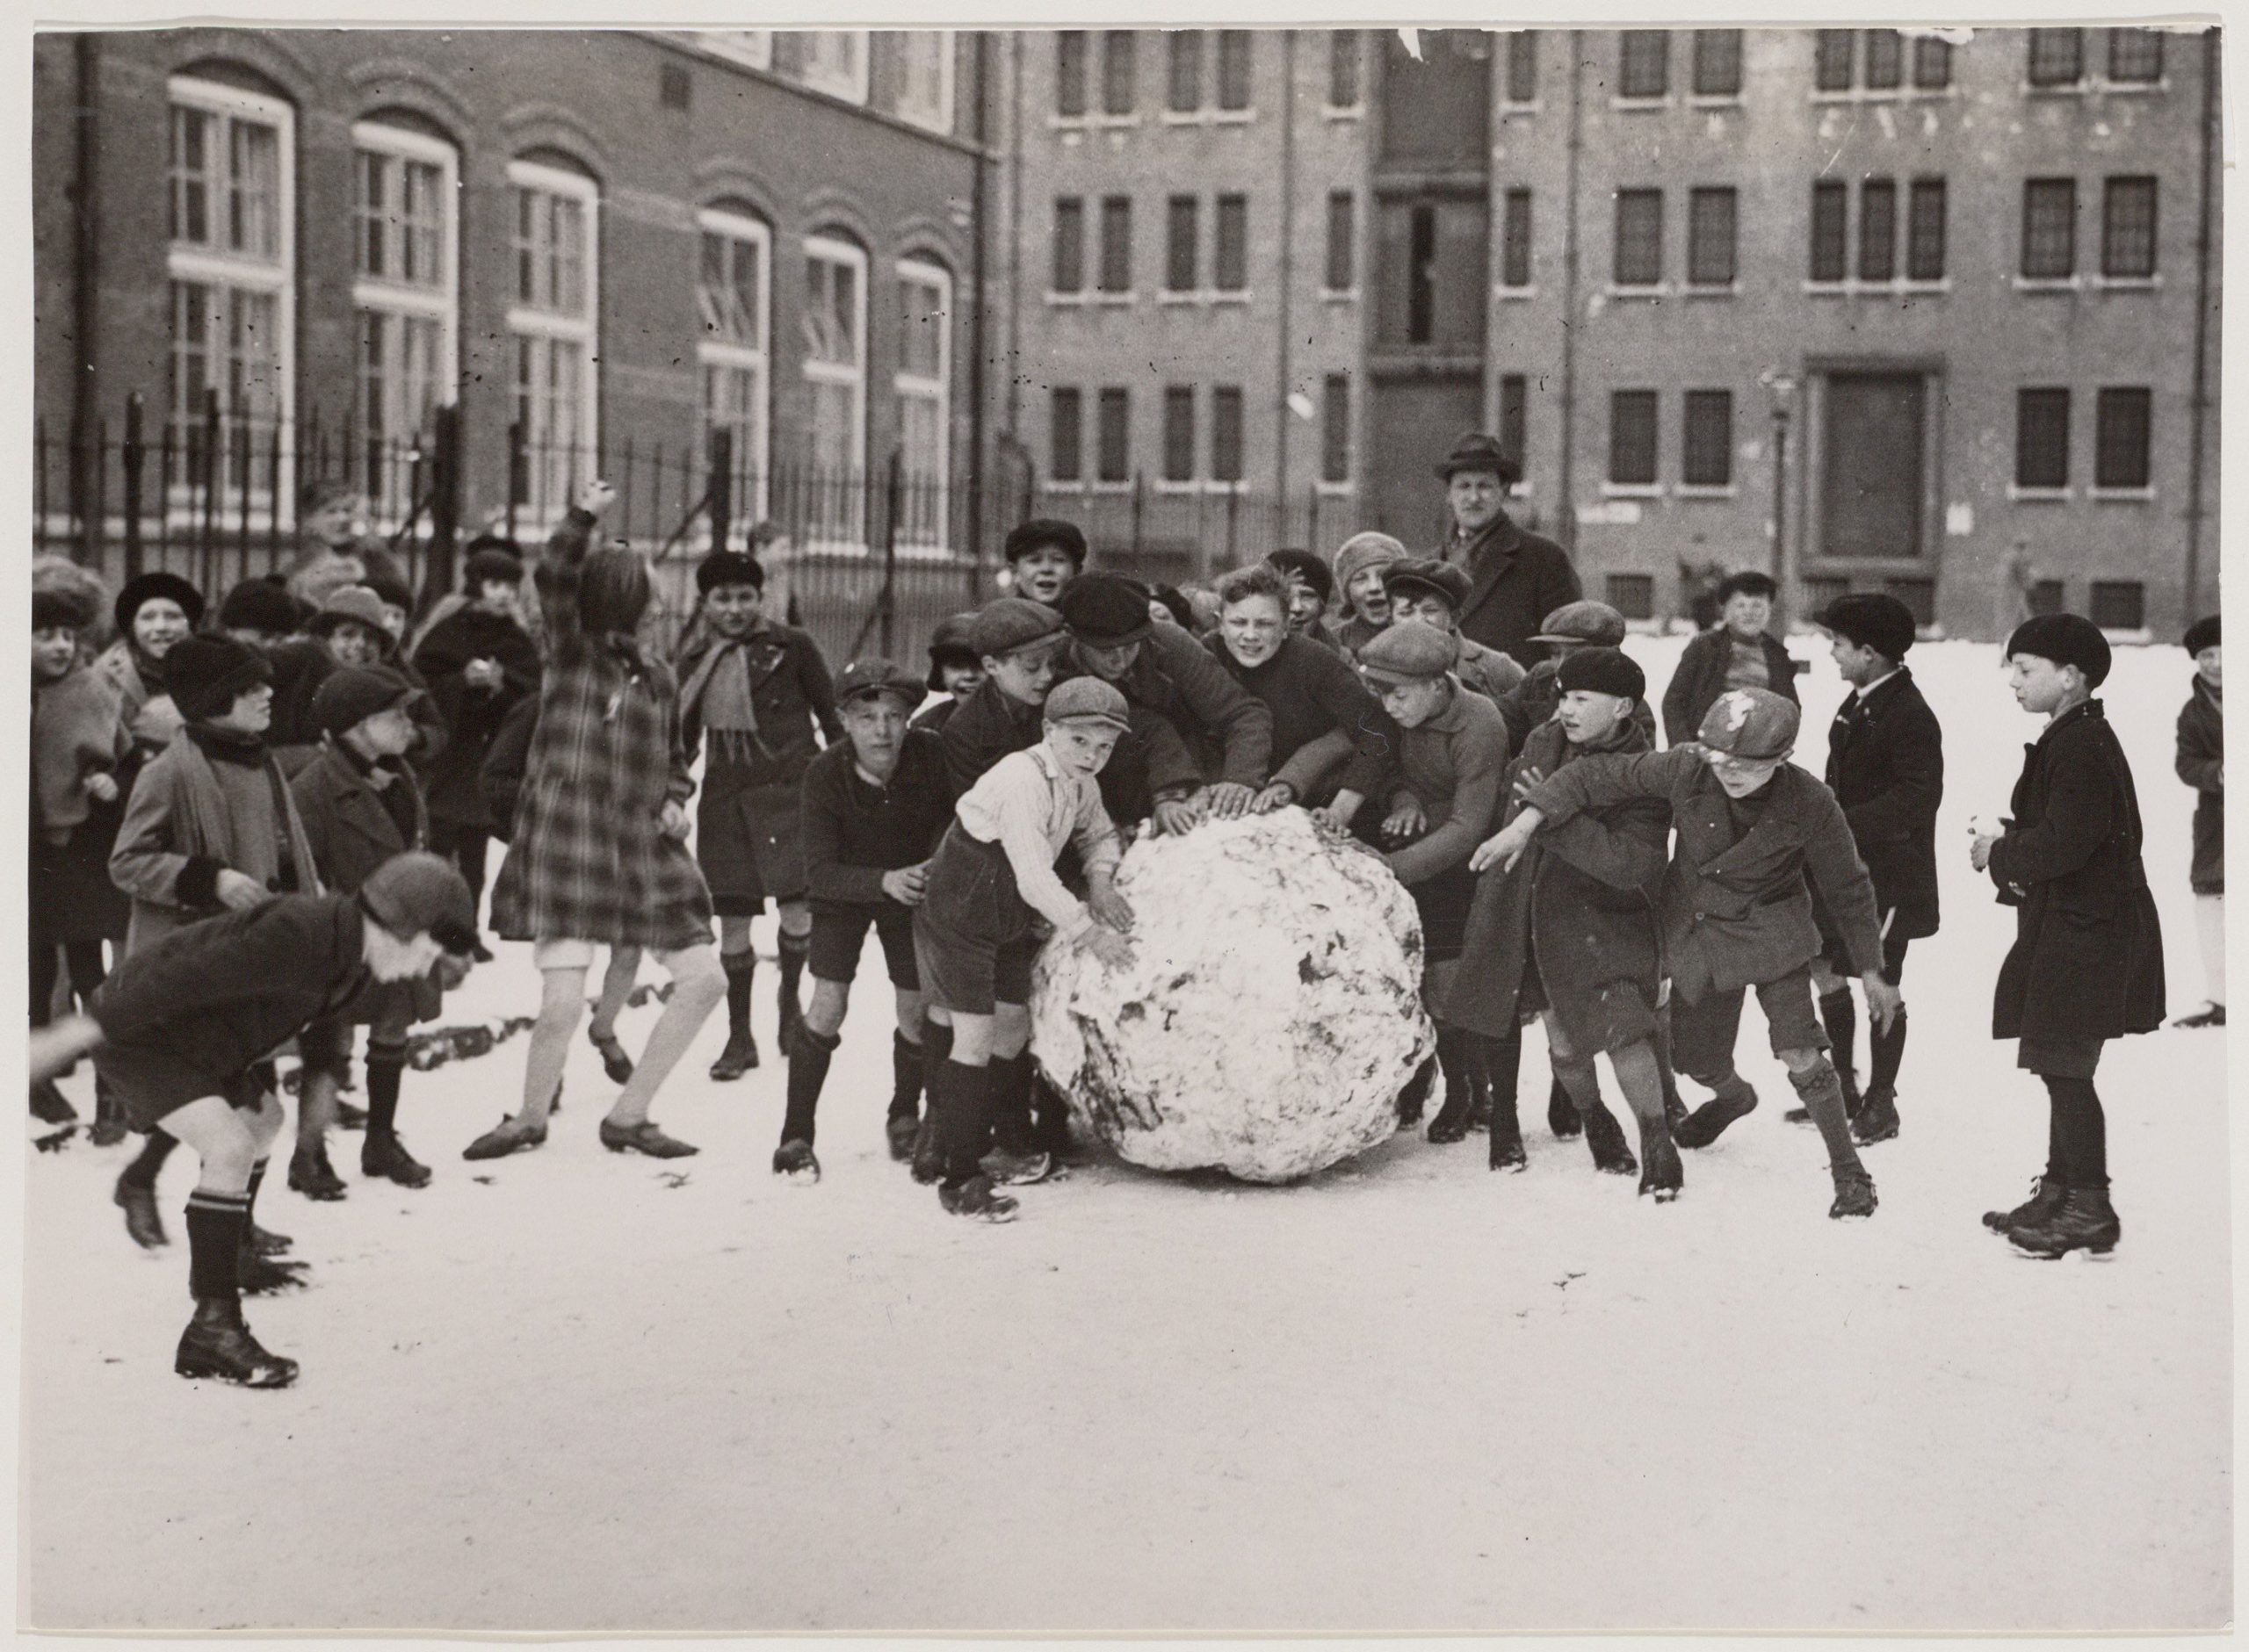 Links: Amsterdamse kinderen spelen in de sneeuw met korte broek in maart, 1931. Rechts: het resultaat na inkleuren. (bron: Collectie Stadsarchief Amsterdam, vervaardiger Vereenigde Fotobureau N.V.; auteursrechtvrij)